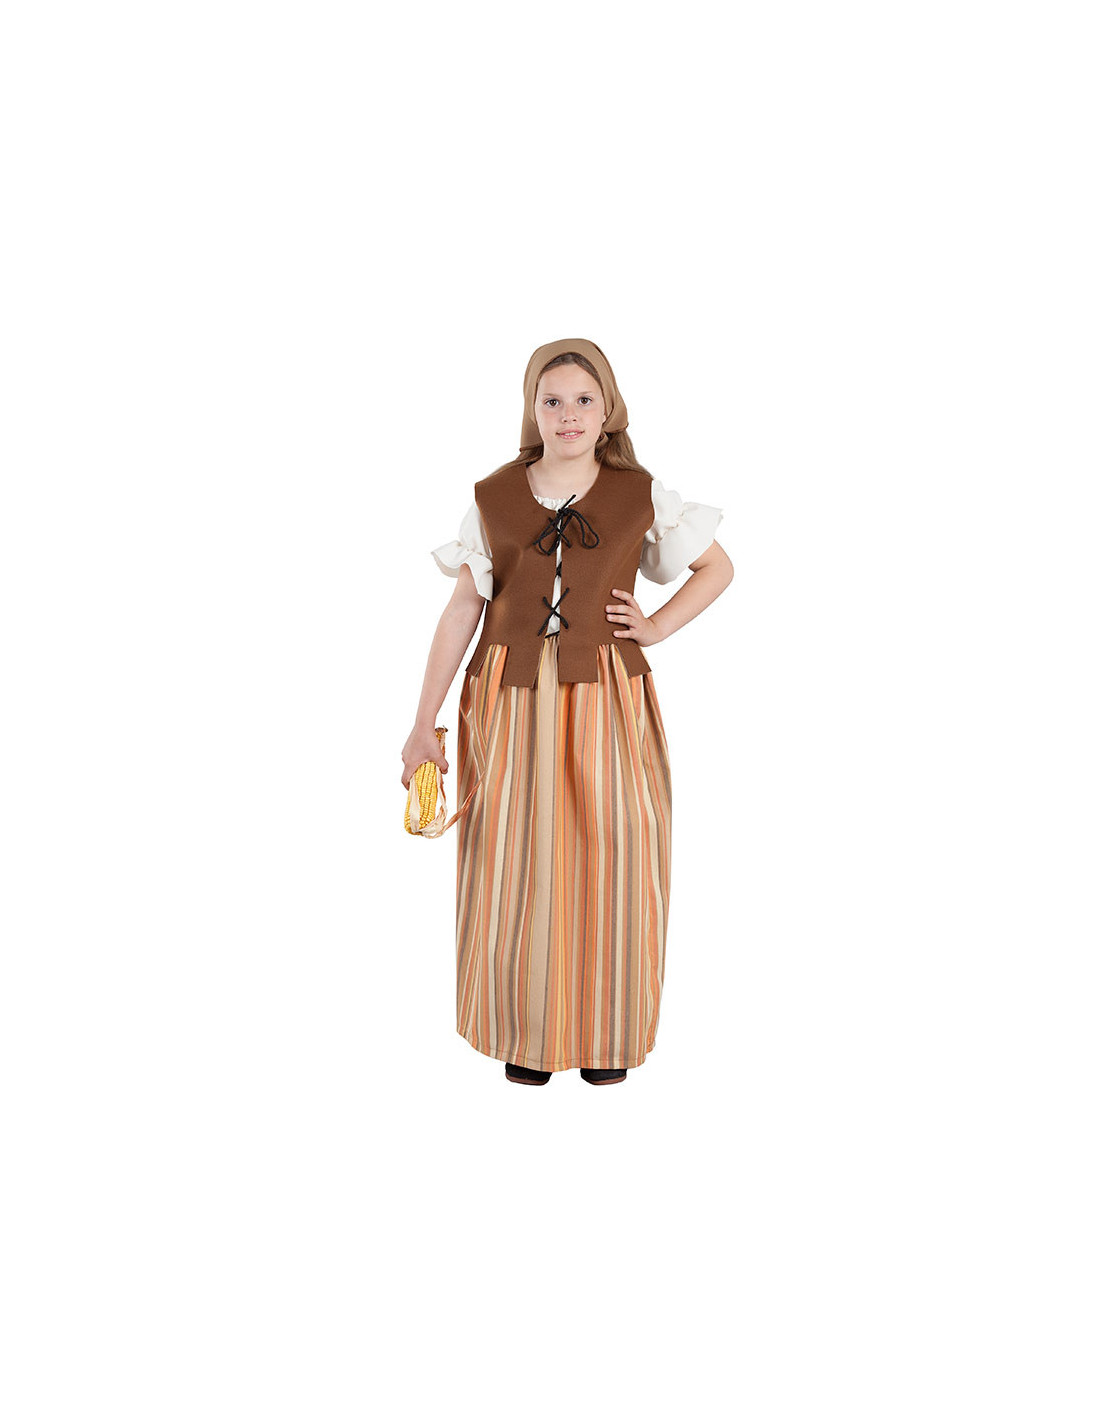 Disfraz de mesonera medieval mujer - Comprar en Disfraces Bacanal